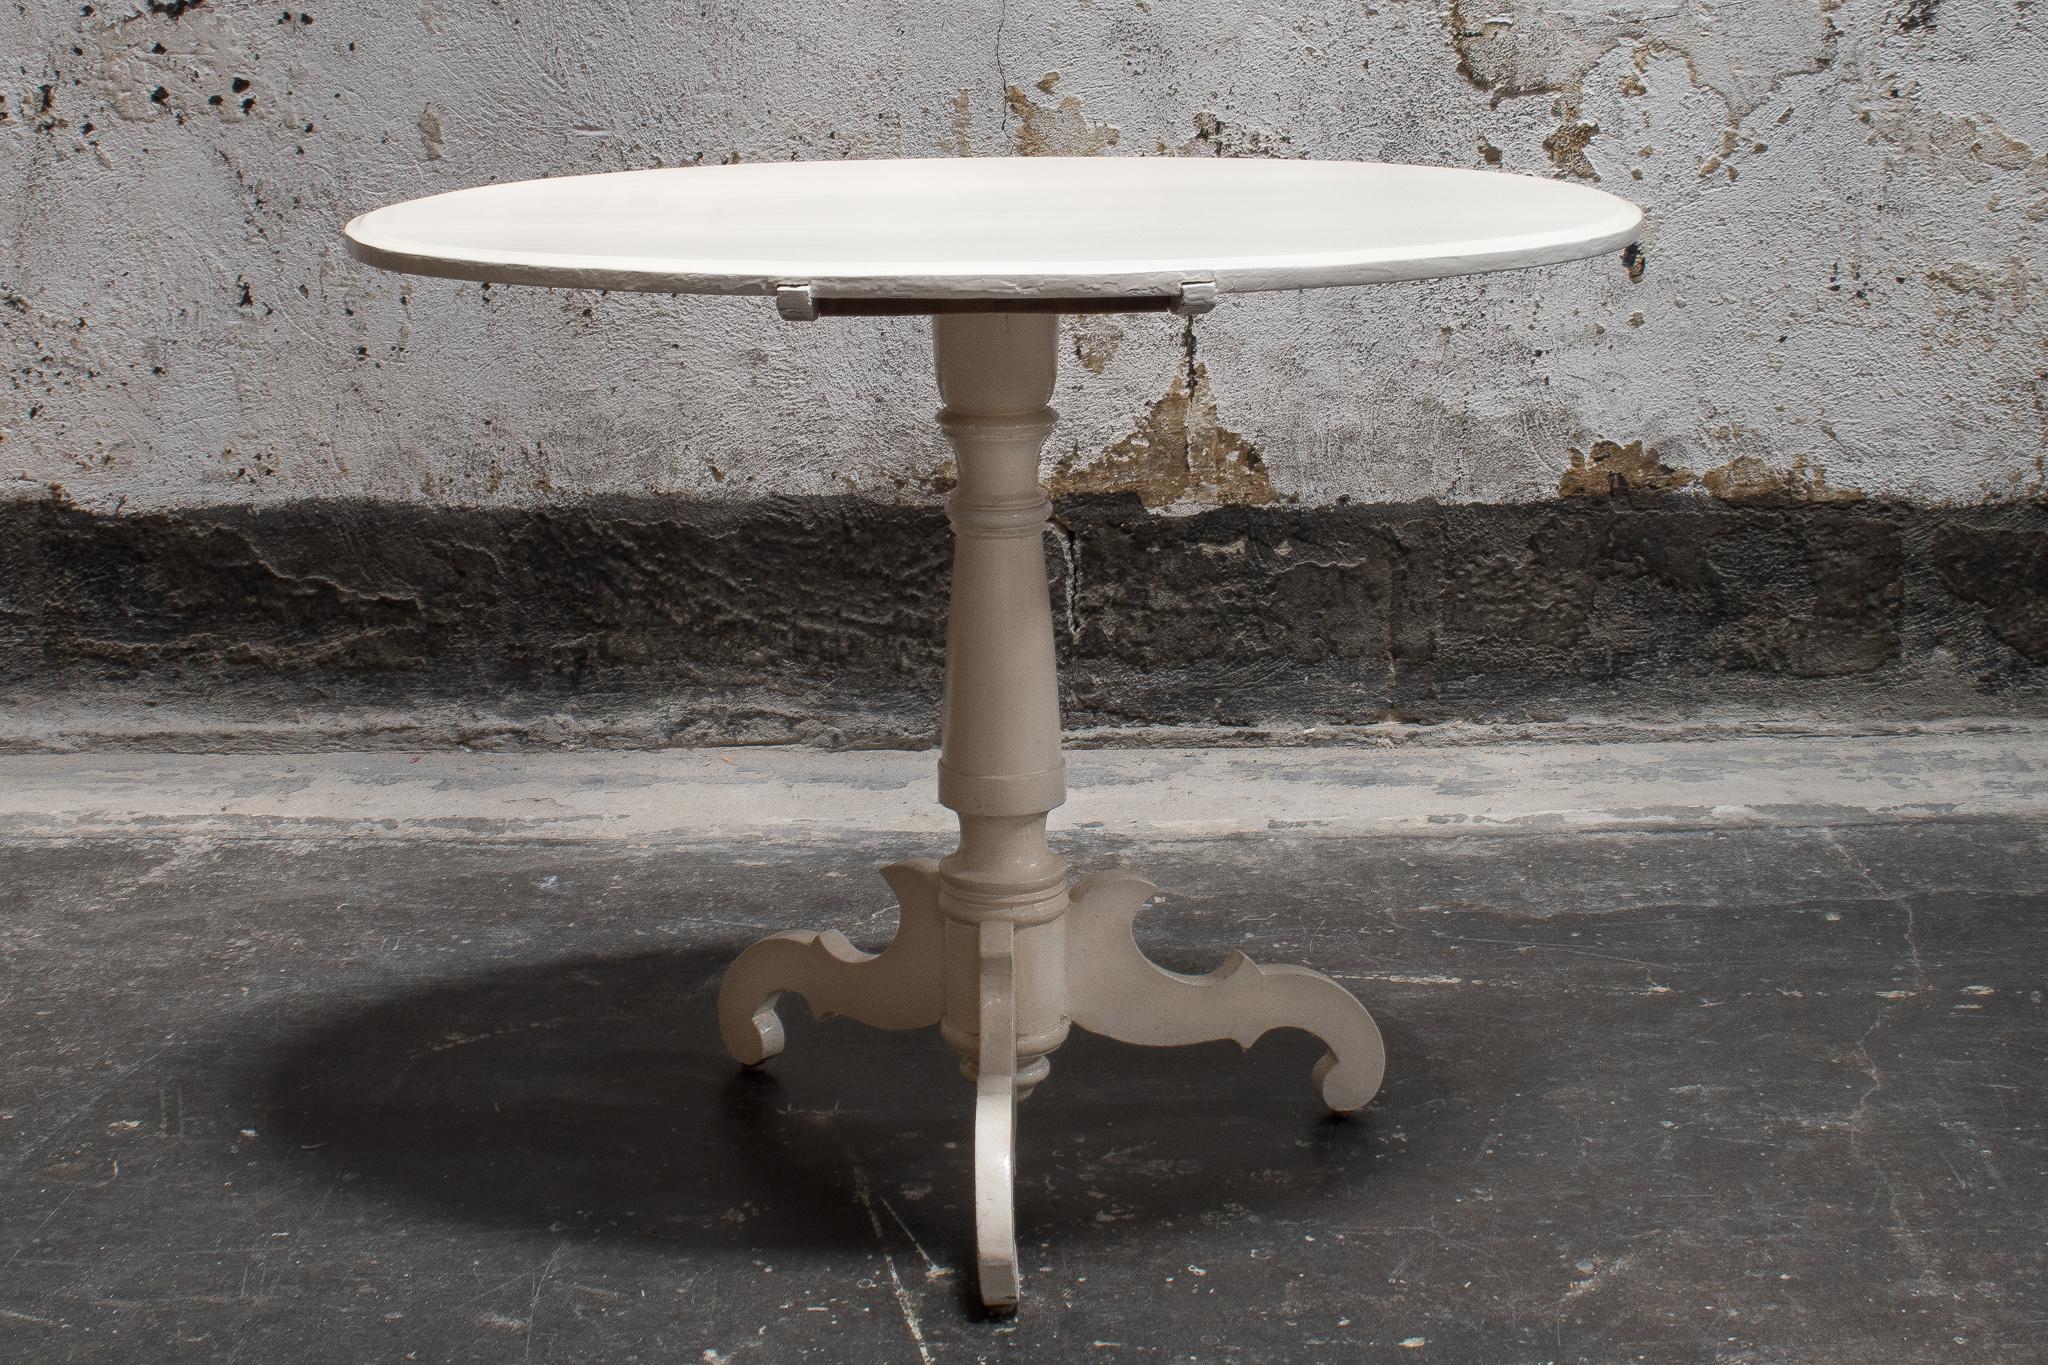 Der ovale Tee- oder Spieltisch wurde in den frühen 1900er Jahren hergestellt. Dieser hübsche Tisch hat eine einfache runde Oberfläche mit einem handgedrehten Mittelpfosten auf einem dreibeinigen Sockel. Der in sanftem Off-White gestrichene Tisch